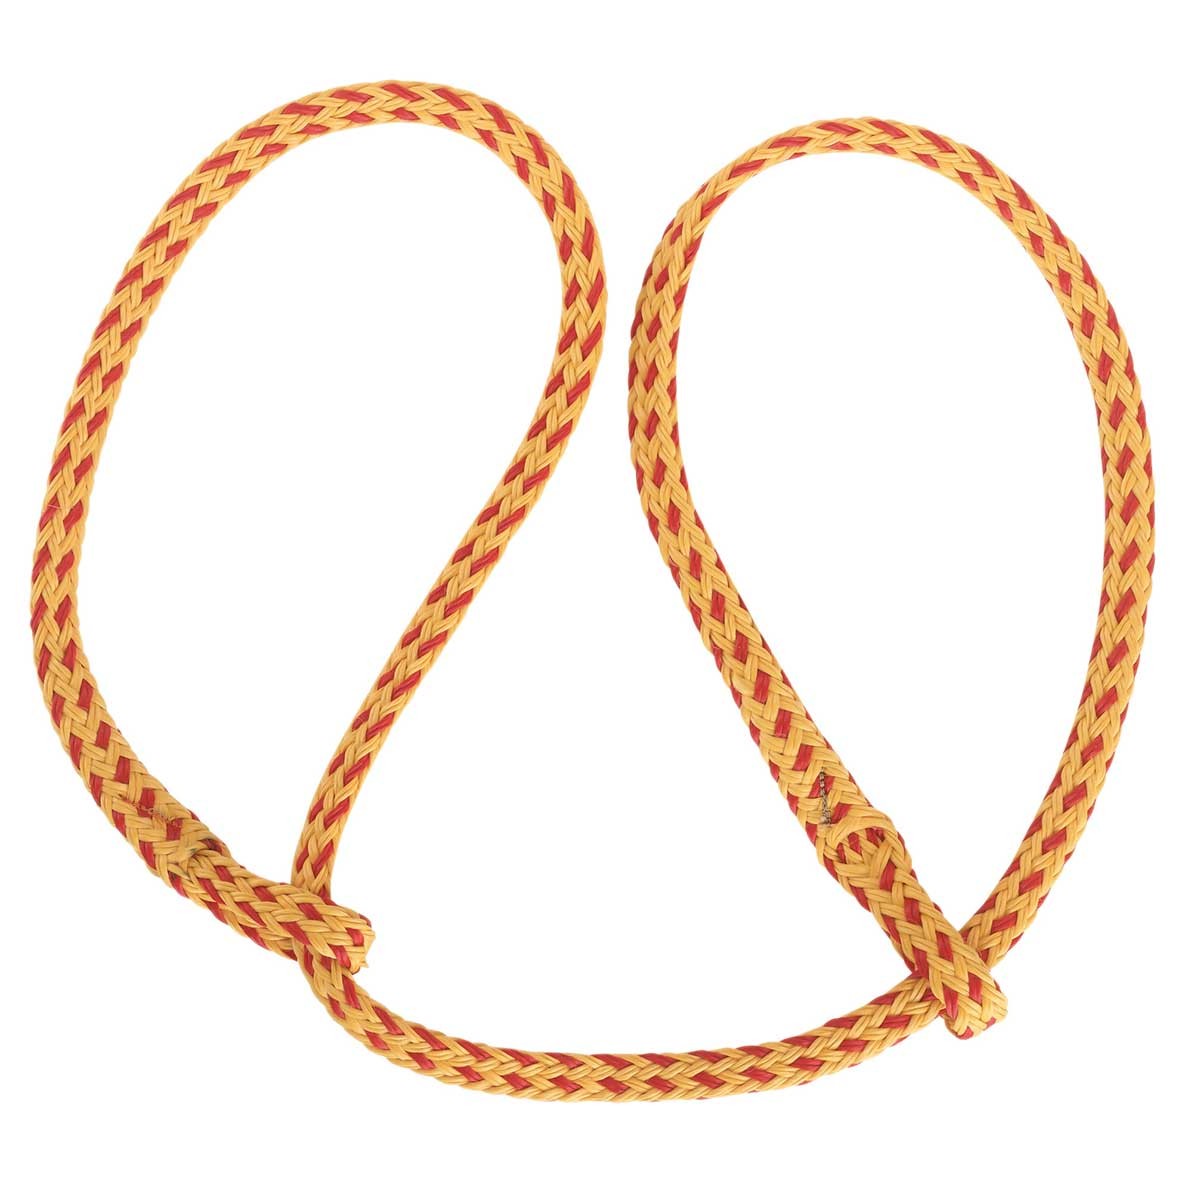 Kerbl szüléssegítő kötél poli / lapos sárga-piros két hurokkal